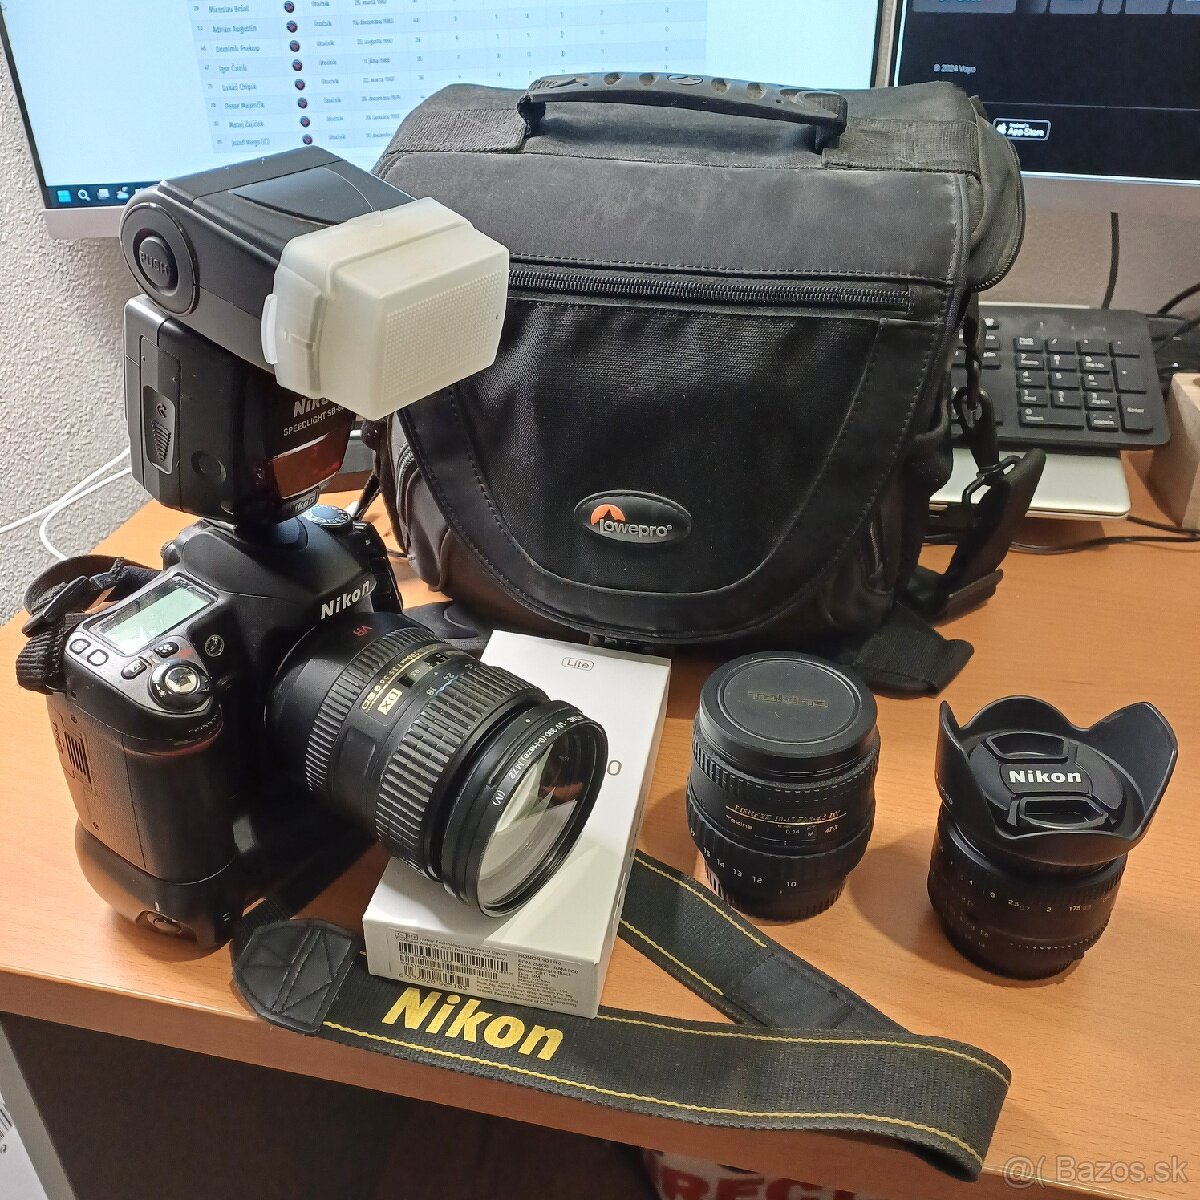 Nikon D80 plus 3 objektivy, Blesk Nikon SB-800 prislusenstvo